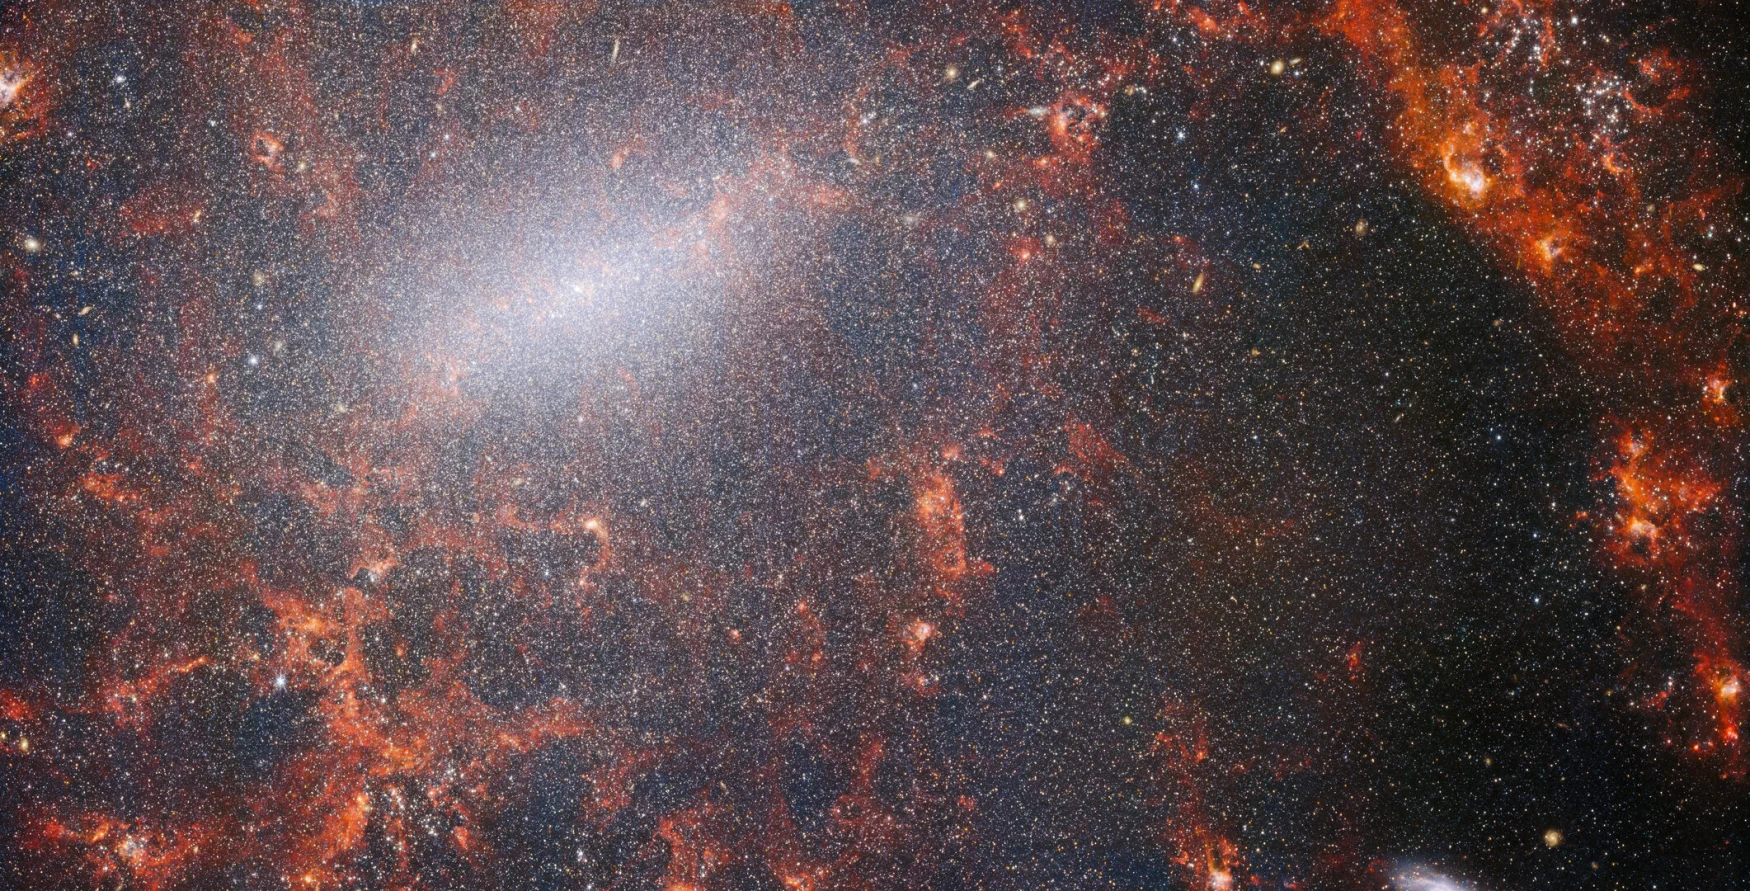 Un patrón delgado de polvo y cúmulos de estrellas brillantes atraviesa esta imagen del Telescopio Espacial James Webb de la NASA/ESA/CSA.  Esta imagen de NIRCam Webb muestra la población masiva de la galaxia, más densa a lo largo de su barra central brillante, así como nubes rojas de gas encendidas iluminadas por estrellas jóvenes en su interior.  Estas estrellas brillantes pertenecen a la galaxia espiral barrada NGC 5068, ubicada a unos 17 millones de años luz de la Tierra en la constelación de Virgo.  Este retrato de NGC 5068 es parte de una campaña para crear un tesoro astronómico, un repositorio de observaciones de formación estelar en galaxias cercanas.  Las joyas anteriores de esta colección se pueden ver aquí y aquí.  Estas observaciones son especialmente valiosas para los astrónomos por dos razones.  Primero, porque la formación de estrellas subyace en muchas áreas de la astronomía, desde la física del plasma enrarecido que se encuentra entre las estrellas hasta la evolución de galaxias enteras.  Al observar la formación de estrellas en las galaxias cercanas, los astrónomos esperan impulsar importantes avances científicos con algunos de los primeros datos disponibles de Webb.  La segunda razón es que las observaciones de Webb se basan en otros estudios de telescopios, incluido el Telescopio Espacial Hubble de NASA/ESA y algunos de los observatorios terrestres más eficientes del mundo.  Webb recolectó imágenes de 19 galaxias formadoras de estrellas cercanas, que los astrónomos pudieron luego combinar con los catálogos del Hubble de 10 000 cúmulos estelares, mapeo espectroscópico de 20 000 nebulosas de emisión formadoras de estrellas del Very Large Telescope (VLT) y observaciones de 12 000 galaxias oscuras.  , densas nubes moleculares identificadas por el Atacama Large Millimeter/Submillimeter Array (ALMA).  Estas observaciones abarcan el espectro electromagnético y brindan a los astrónomos una oportunidad sin precedentes para reconstruir los detalles de la formación estelar.  Esta imagen en el infrarrojo cercano de la galaxia está llena de un enorme cúmulo de viejas estrellas que forman el núcleo de NGC 5068. La aguda visión de NIRCam permite a los astrónomos mirar a través del gas y el polvo de la galaxia para examinar de cerca sus estrellas.  En el camino de los brazos espirales se encuentran densas y brillantes nubes de polvo: estas son regiones H II, acumulaciones de gas hidrógeno, donde se forman nuevas estrellas.  Las estrellas jóvenes y enérgicas ionizan el hidrógeno que las rodea, lo que, combinado con la expulsión de polvo caliente, crea un brillo rojizo.  Las regiones H II son un objetivo fascinante para los astrónomos, y los instrumentos Webb son herramientas ideales para estudiarlas, lo que da como resultado esta imagen. [Image Description: A close-in image of a spiral galaxy, showing its core and part of a spiral arm. At this distance thousands upon thousands of tiny stars that make up the galaxy can be seen. The stars are most dense in a whitish bar that forms the core, and less dense out from that towards the arm. Bright red gas clouds follow the twist of the galaxy and the spiral arm.] Enlaces NGC 5068 (imagen NIRCam+MIRI) NGC 5068 (imagen MIRI) Herramienta deslizante (imágenes MIRI y NIRCam) Panorámica de video NGC 5068 Video NGC 5068 Vistas Webb (imágenes MIRI y NIRCam) Zoom de video NGC 5068 